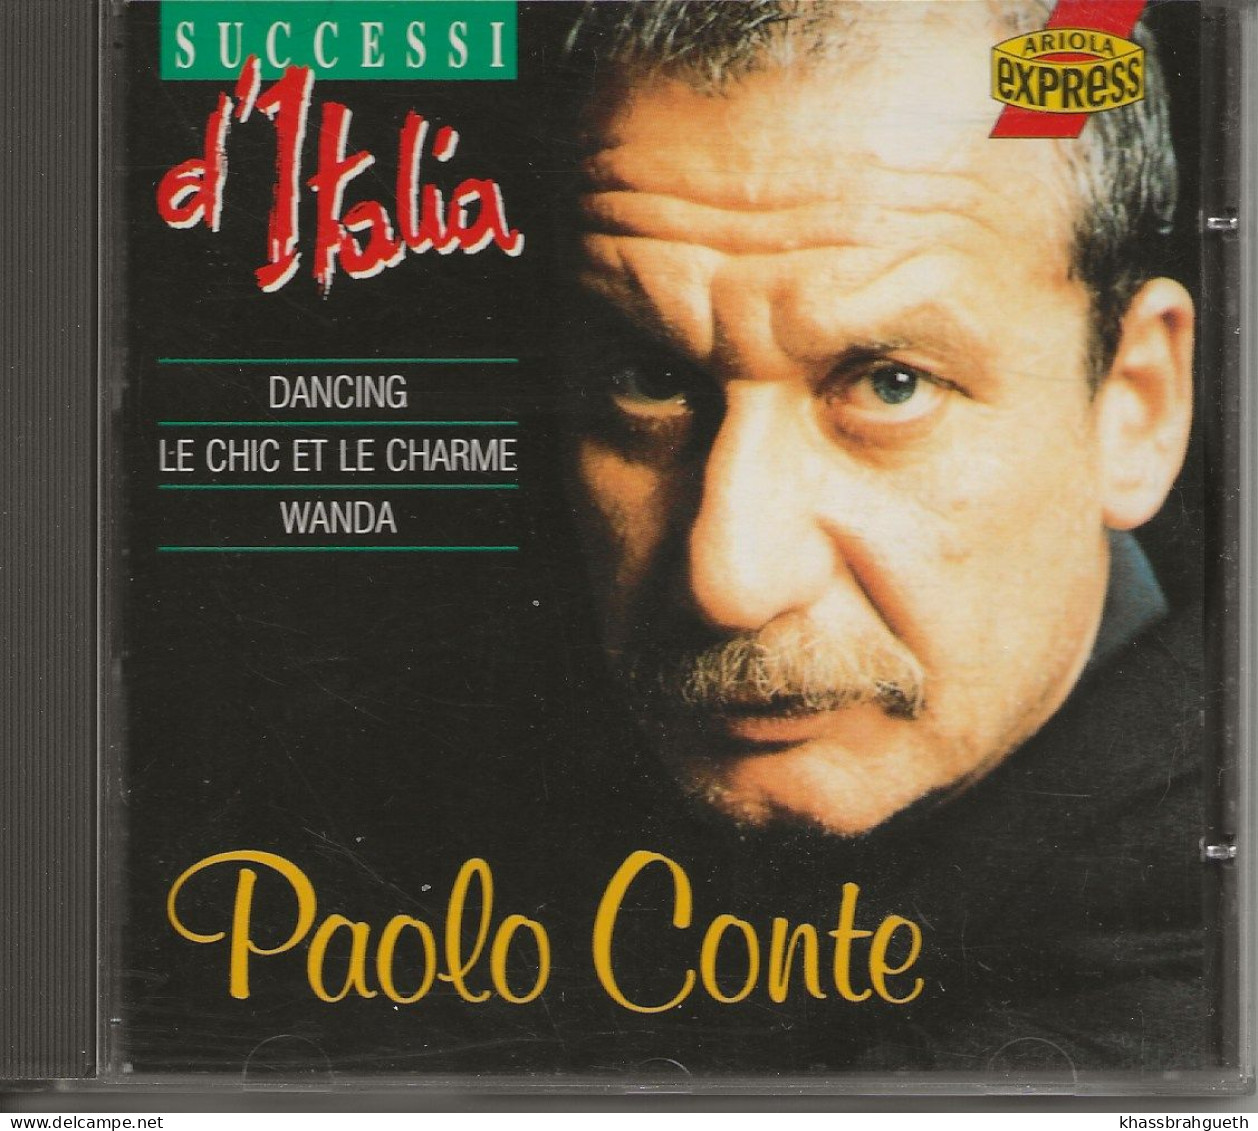 PAOLO CONTE - SUCCESSI D'ITALIA - ARIOLA (1993) (CD ALBUM) - Sonstige - Italienische Musik